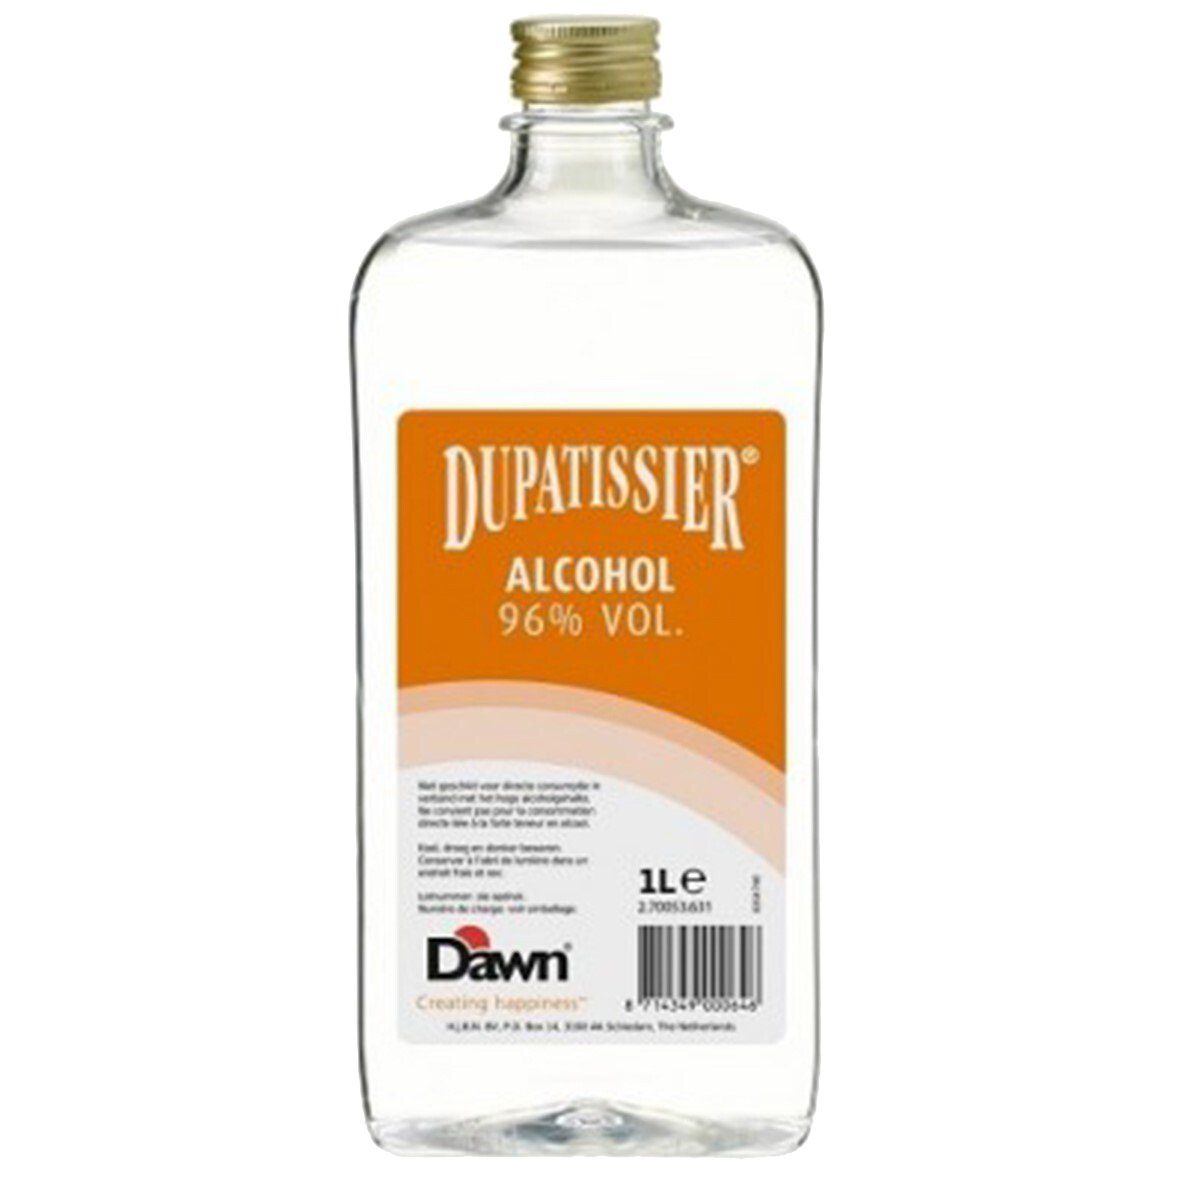 Dawn Alcohol dupatissier Fles 1 liter Sligro.nl